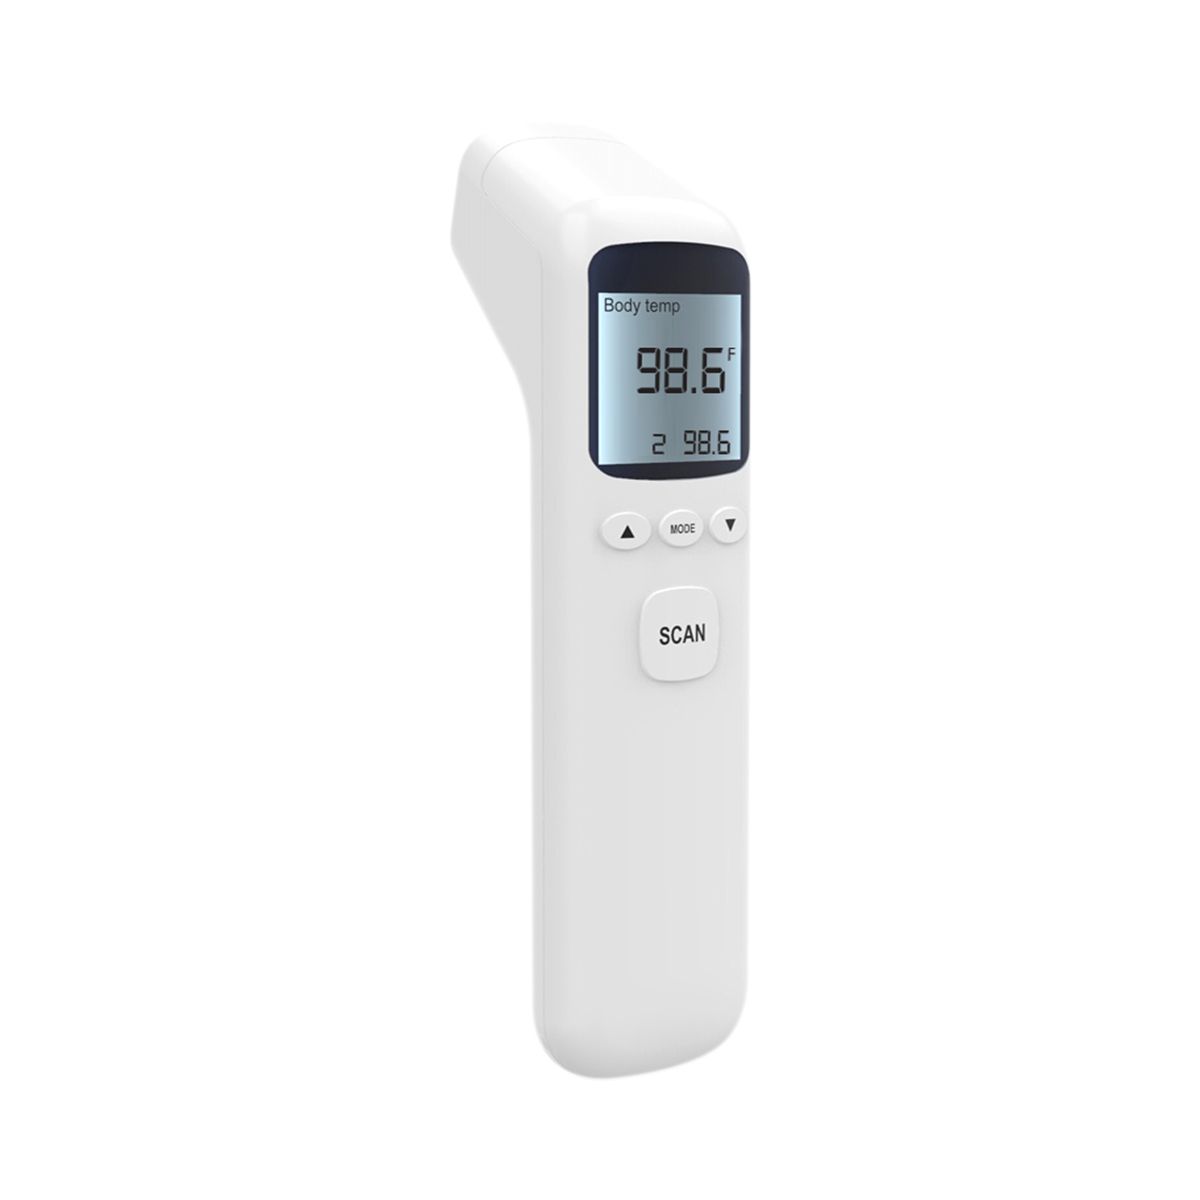 Primo Digital Remote Thermometer